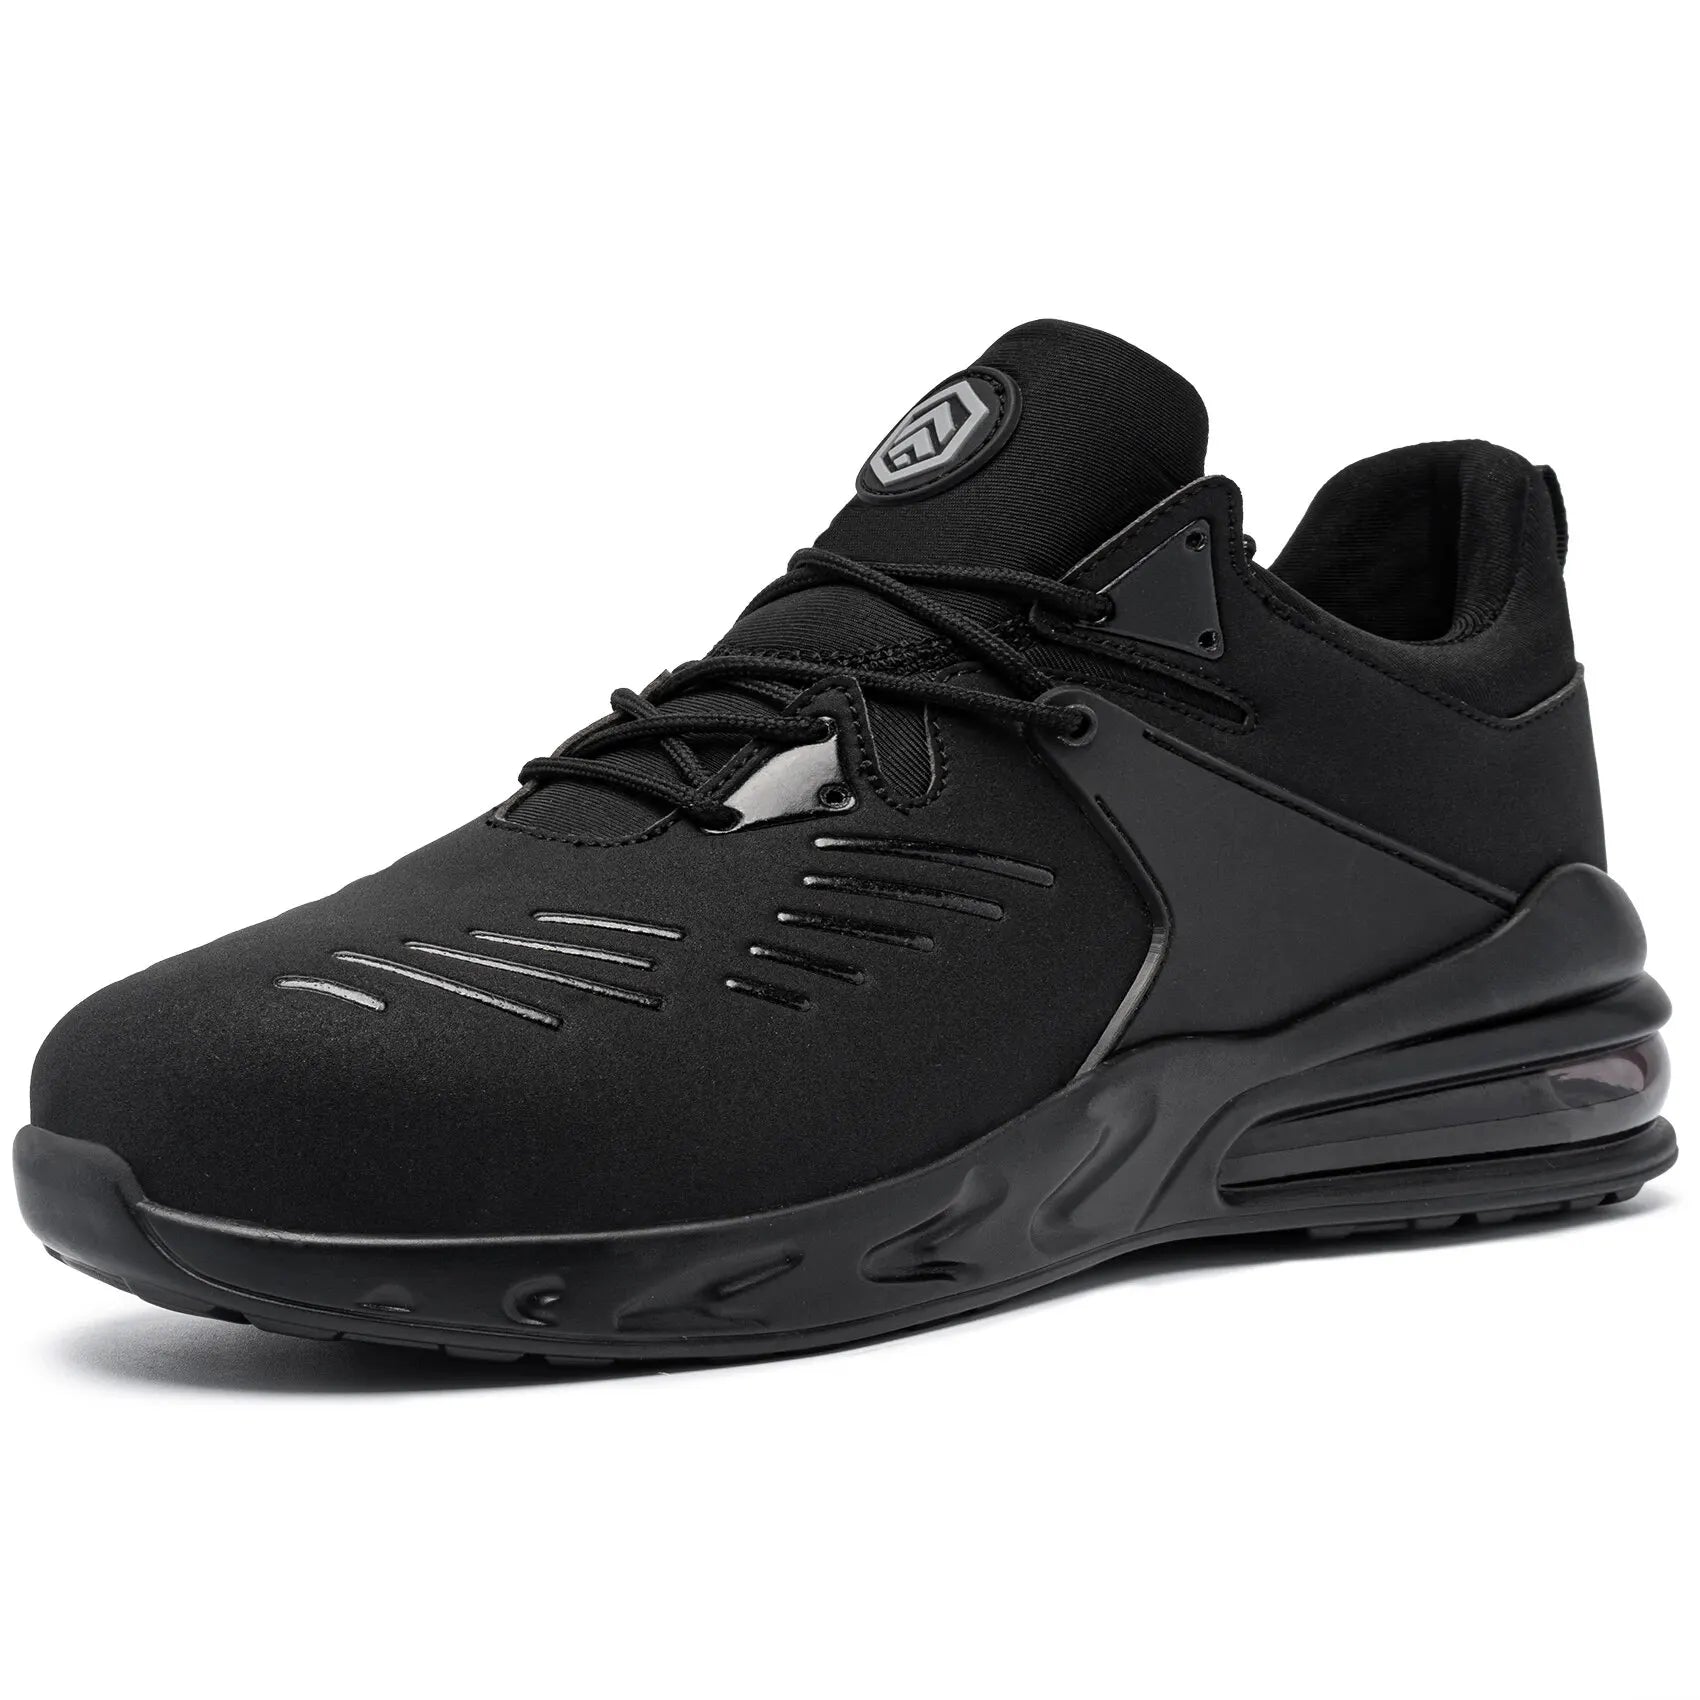 S1 Zapatos de seguridad impermeables para hombre SRC, antideslizantes, zapatos de trabajo con punta de acero, amortiguación, cómodo y ligero cojín de aire